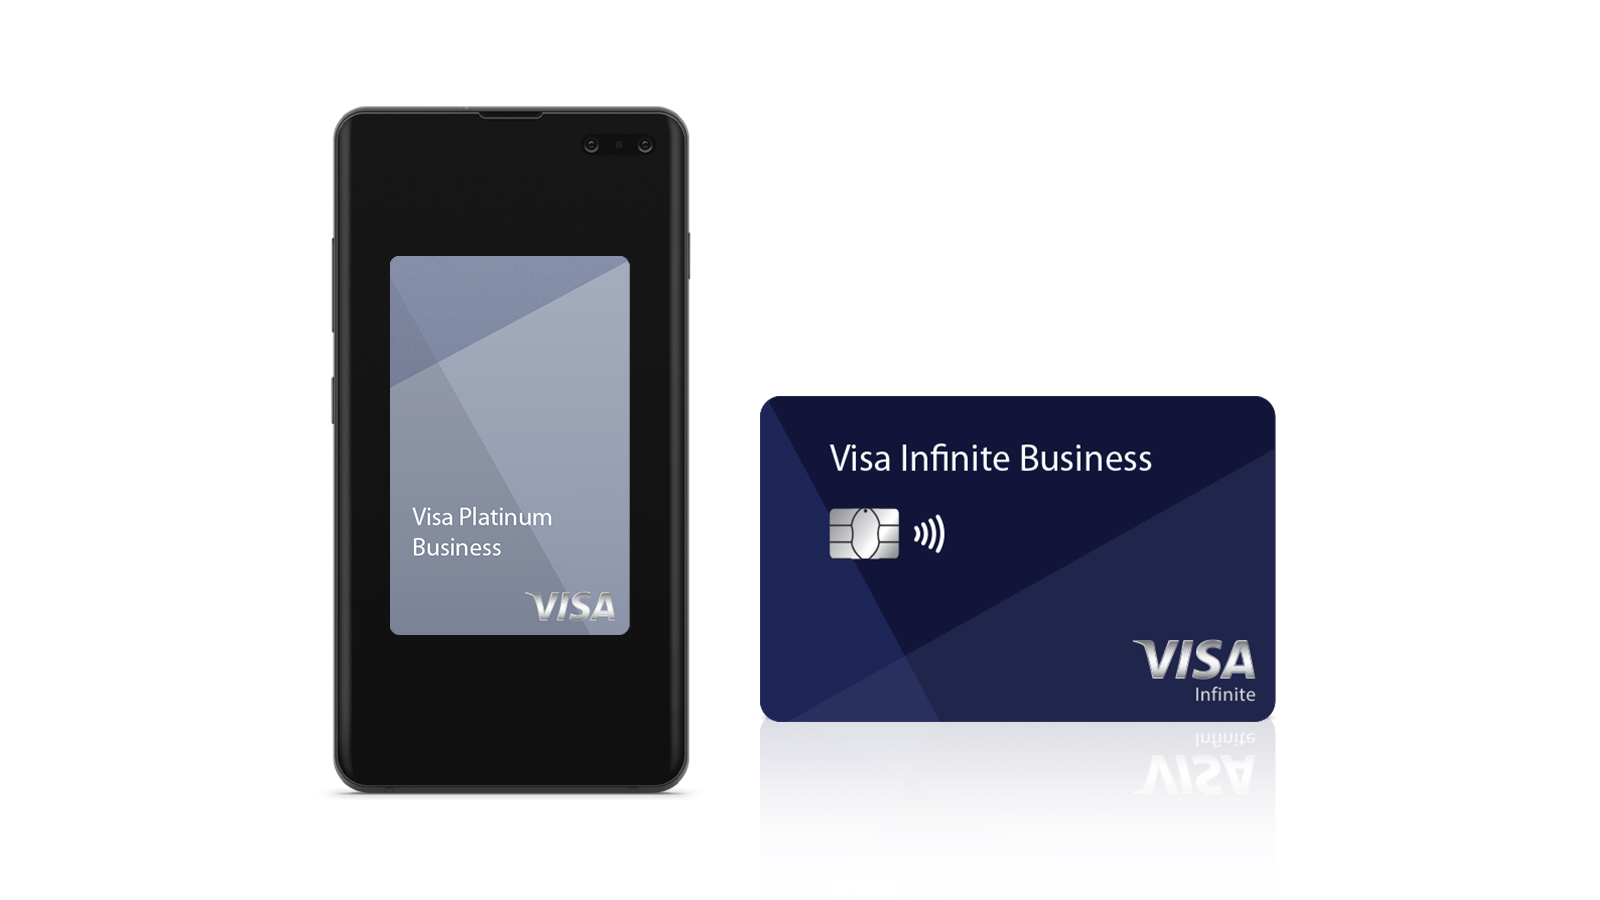 visa premium card and phone